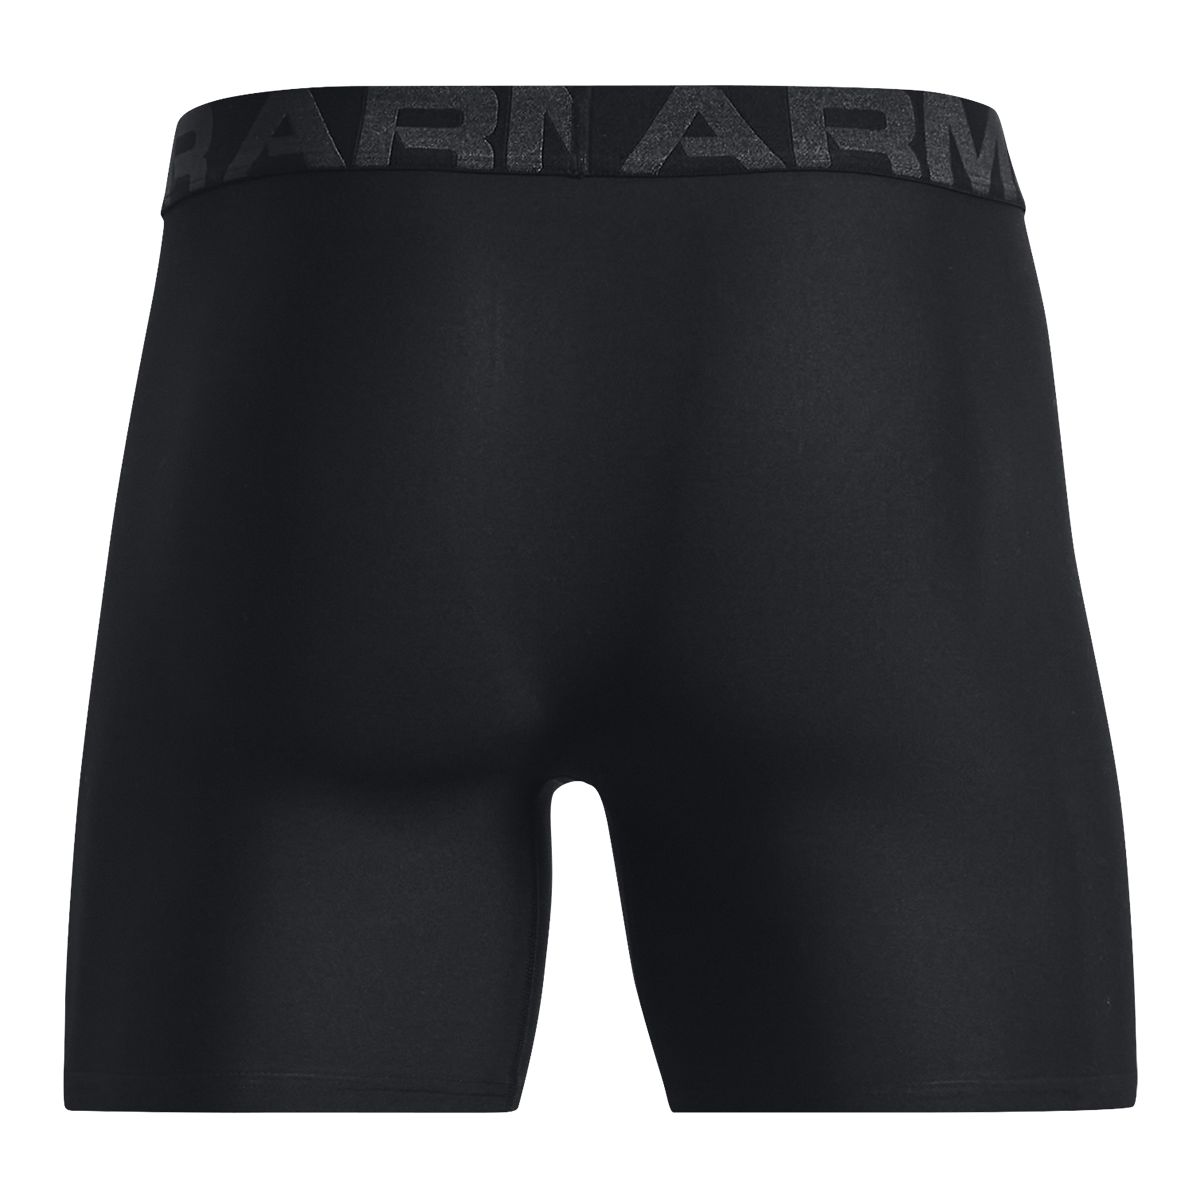  UA Tech 6in 2 Pack, Black - men's underwear